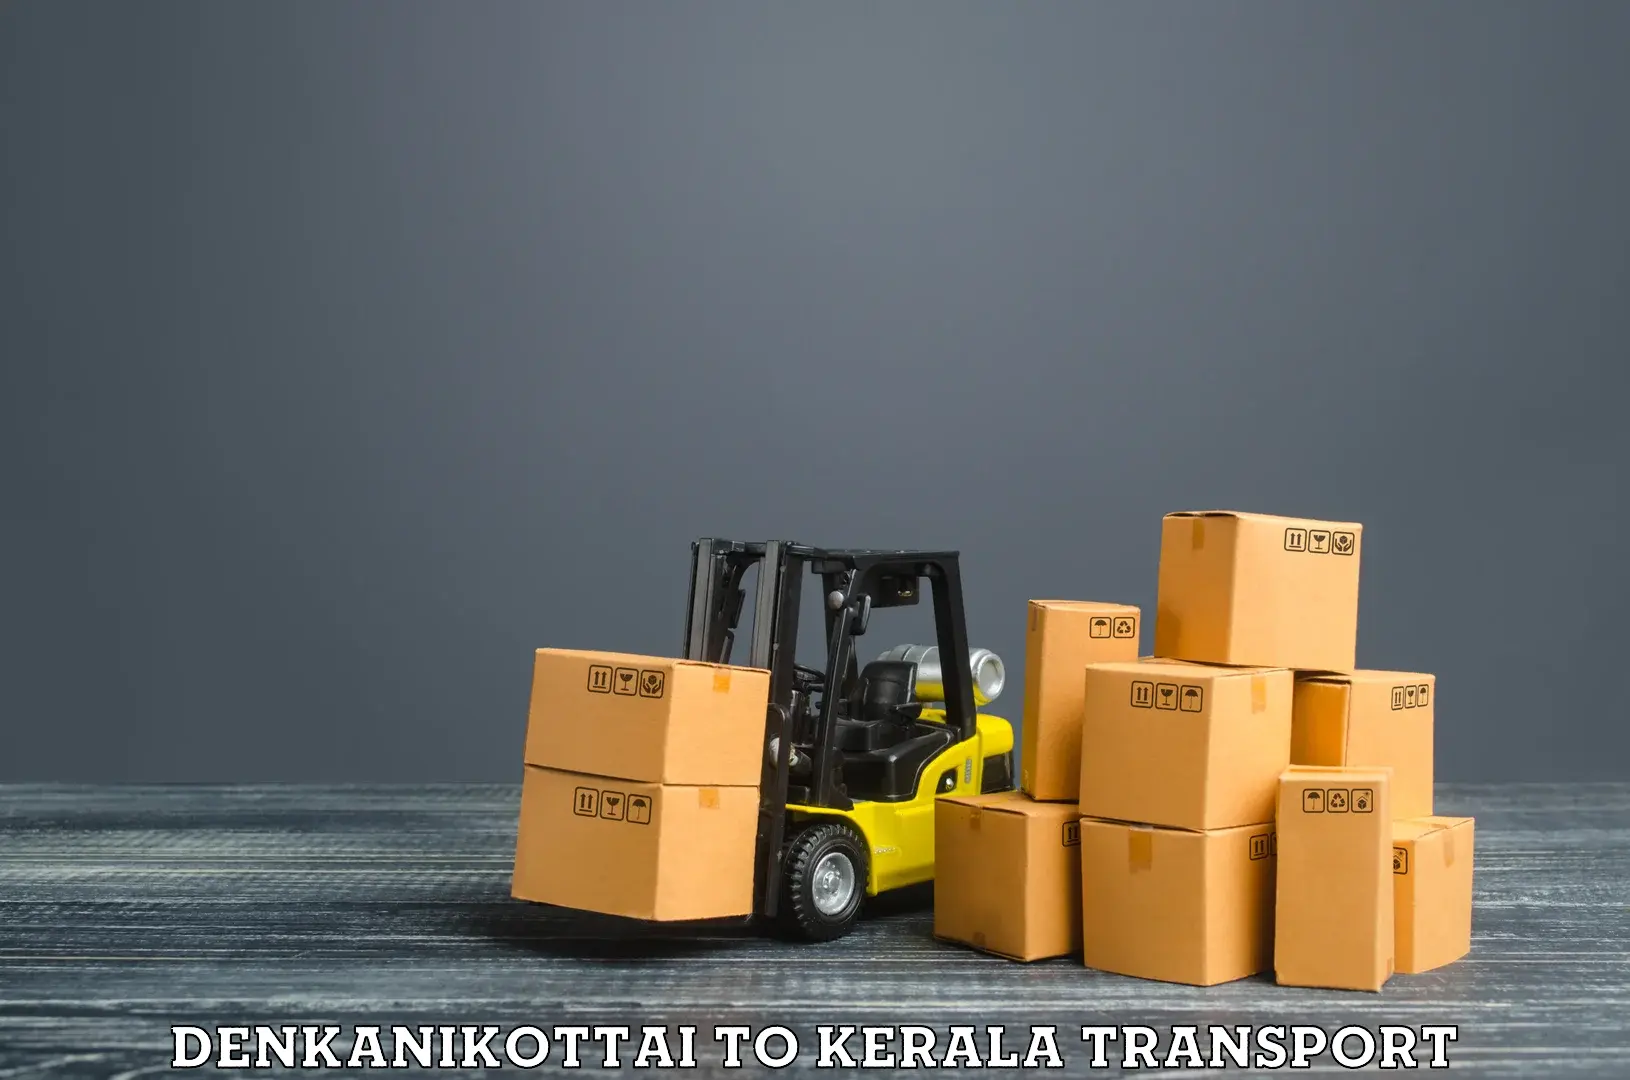 Interstate transport services Denkanikottai to Cochin Port Kochi